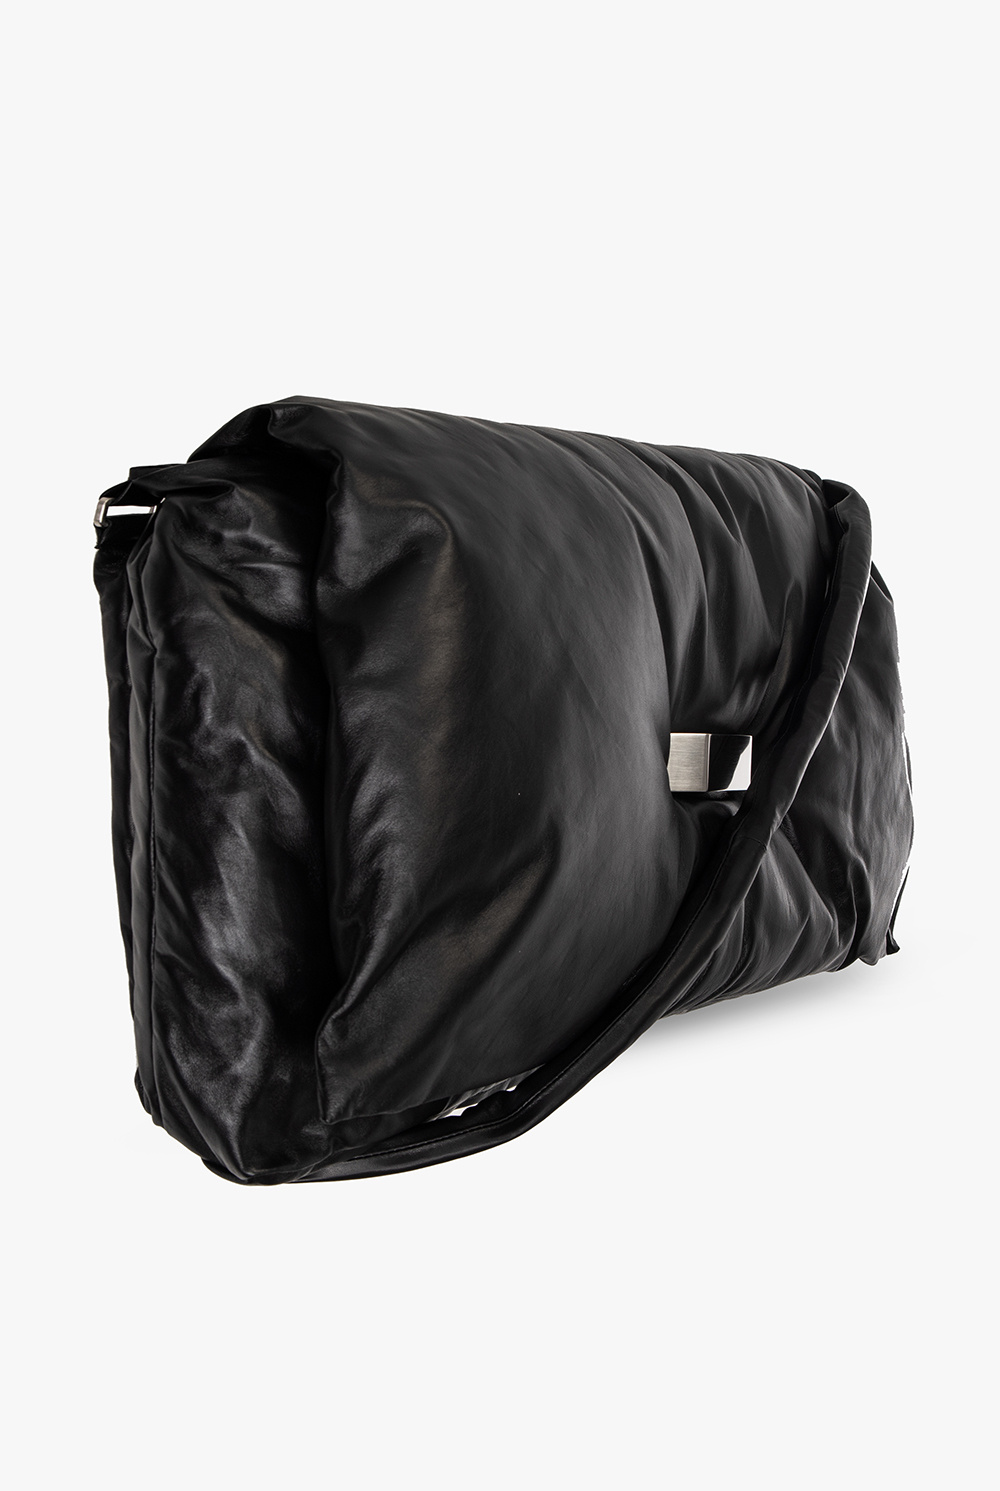 Rick Owens neous orbit chain strap leather shoulder bag item